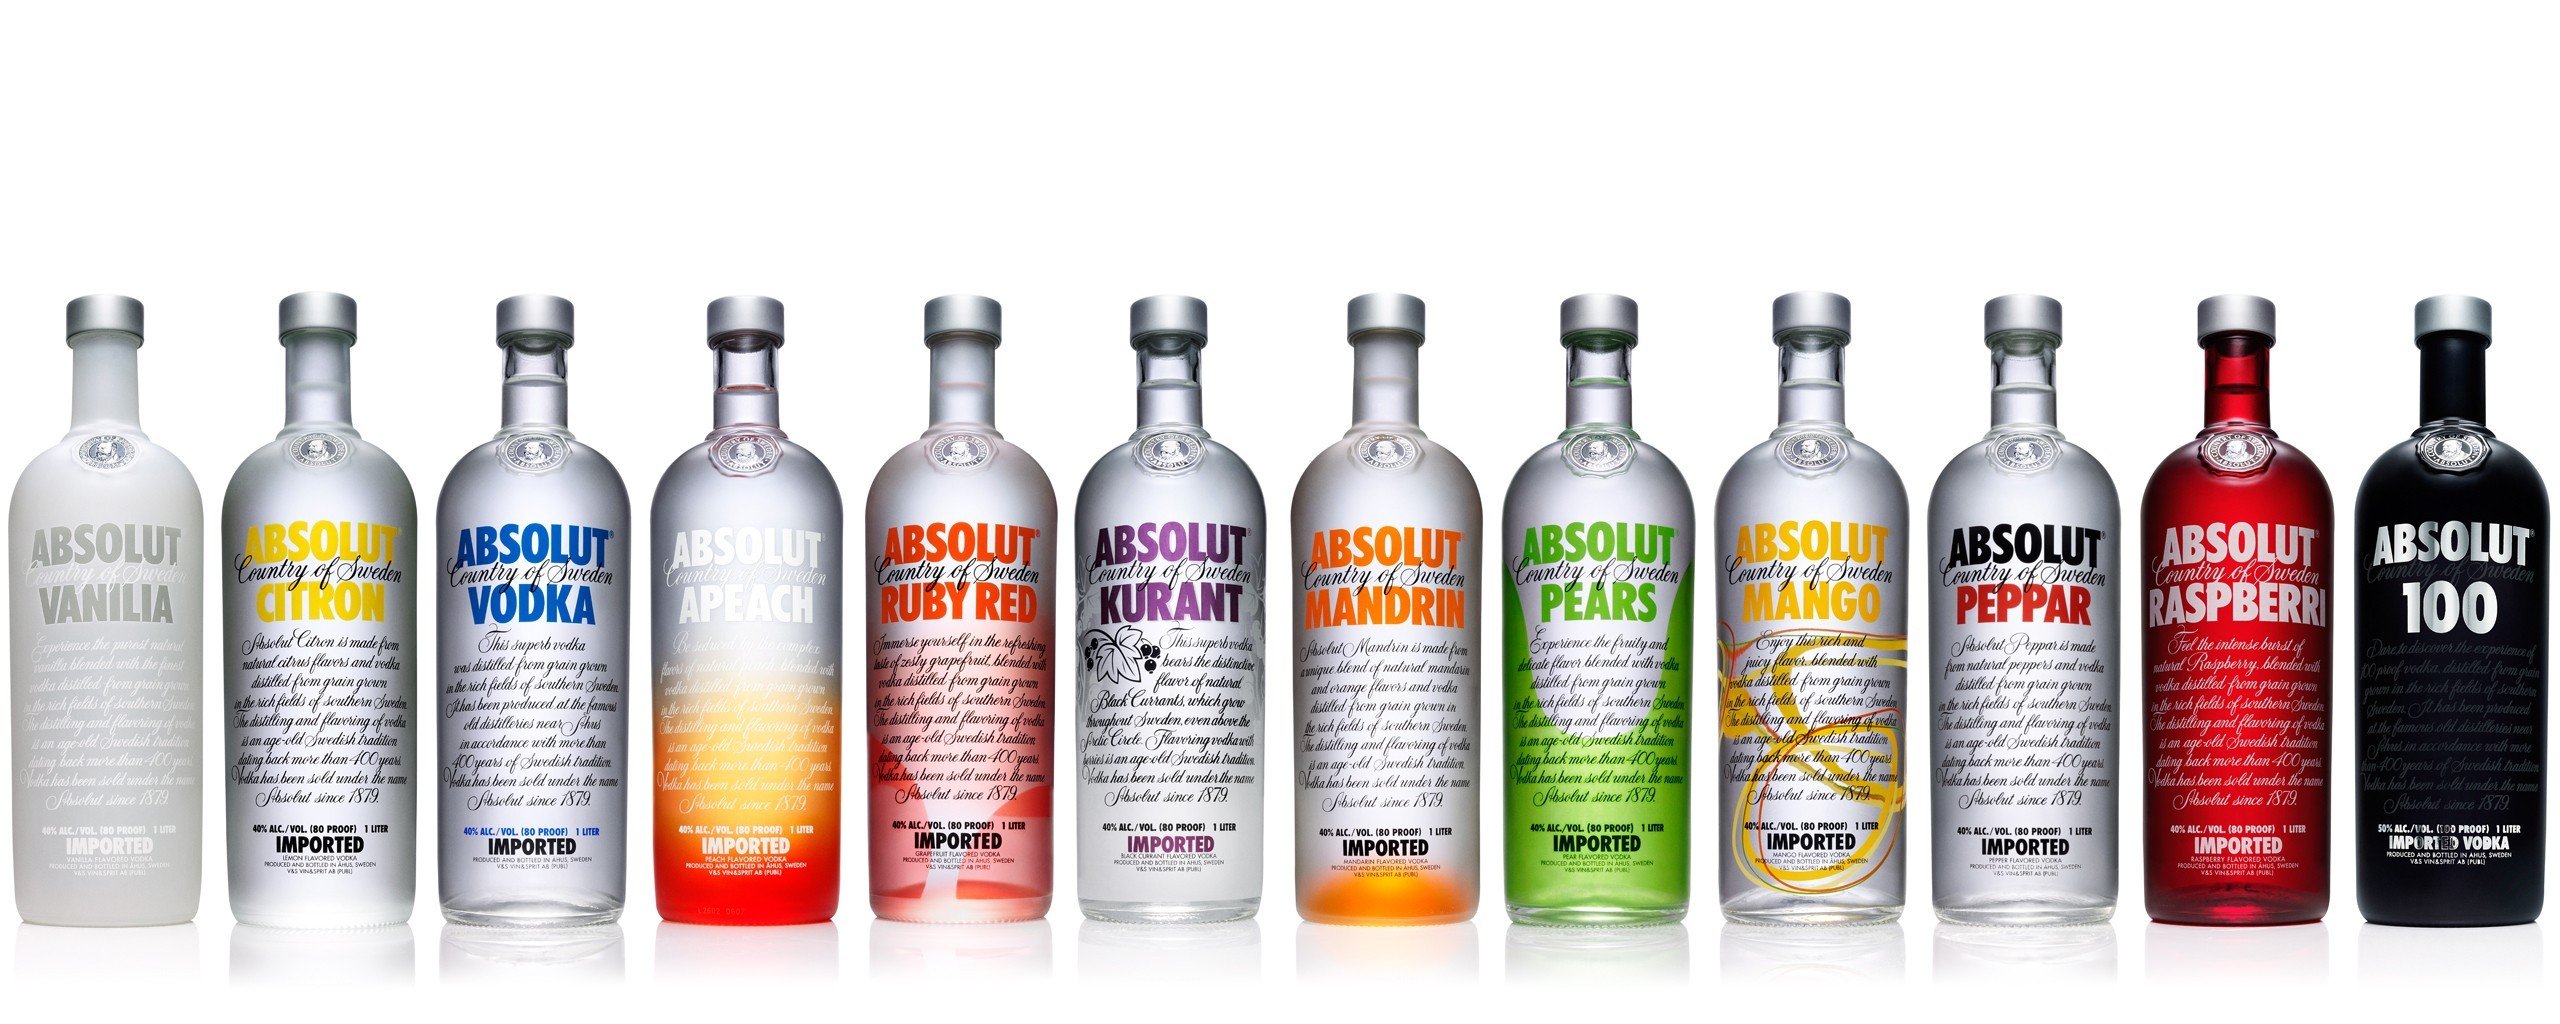 fond d'écran vodka absolut,vodka,boisson,produit,boisson distillée,bouteille en verre